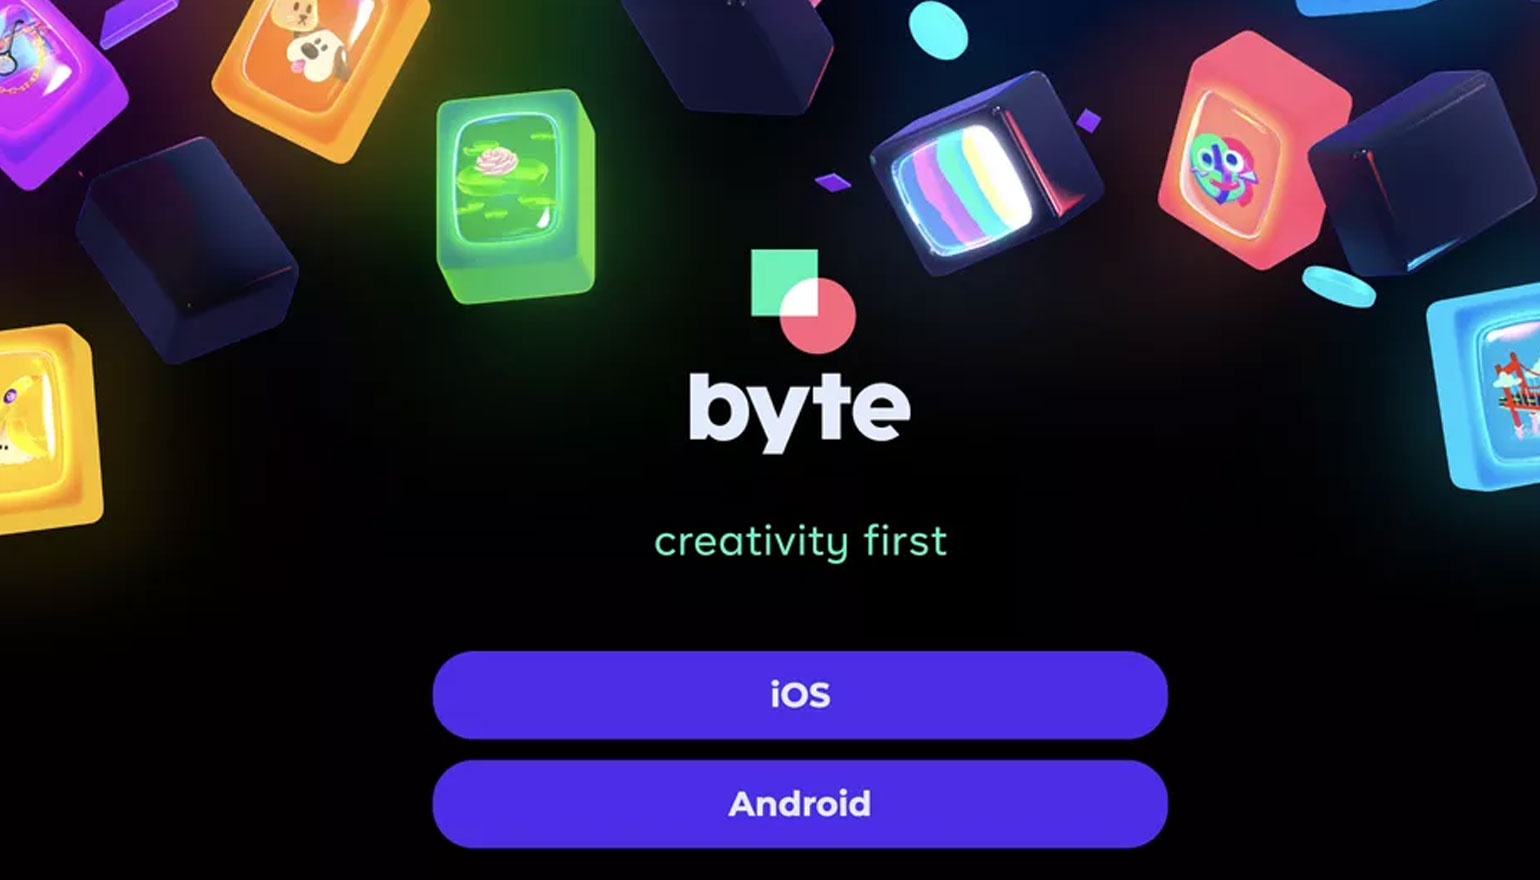 App Store في 27 يناير 2020 ، أصبح الآن منافس TikTok وخلفه Vine Byte متاحين للتنزيل